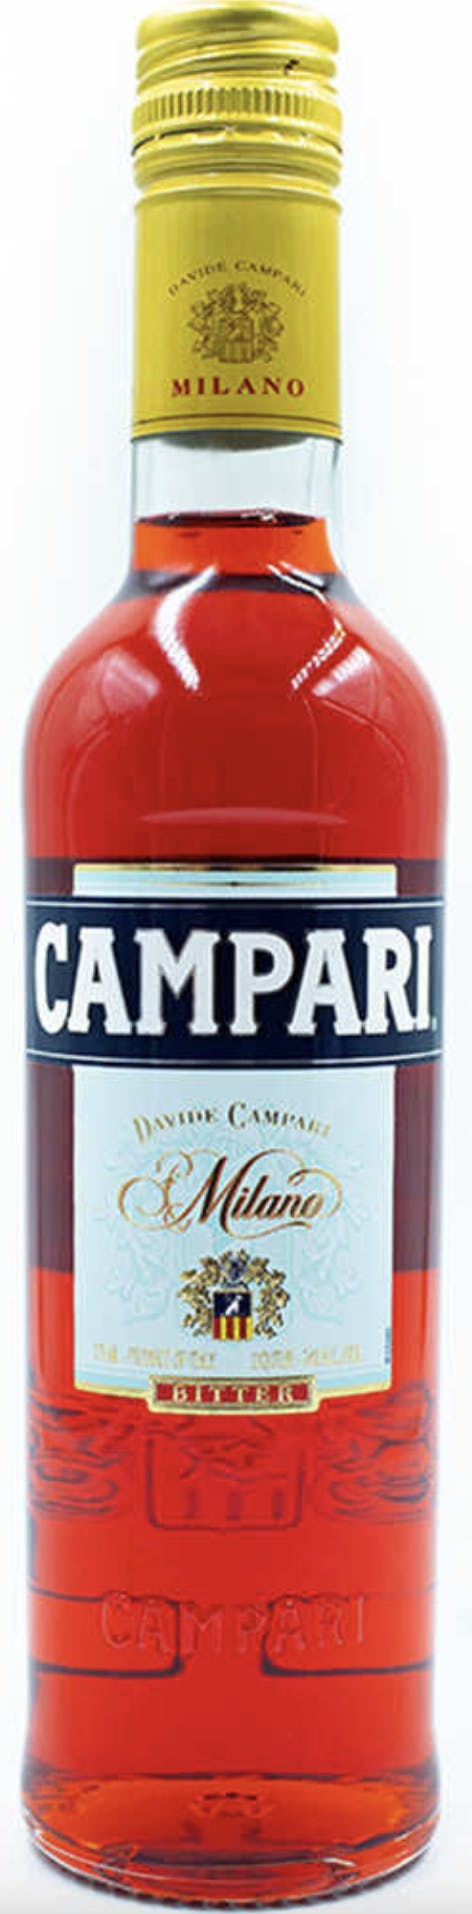 Campari Aperitivo 375ml - Bottles and Cases